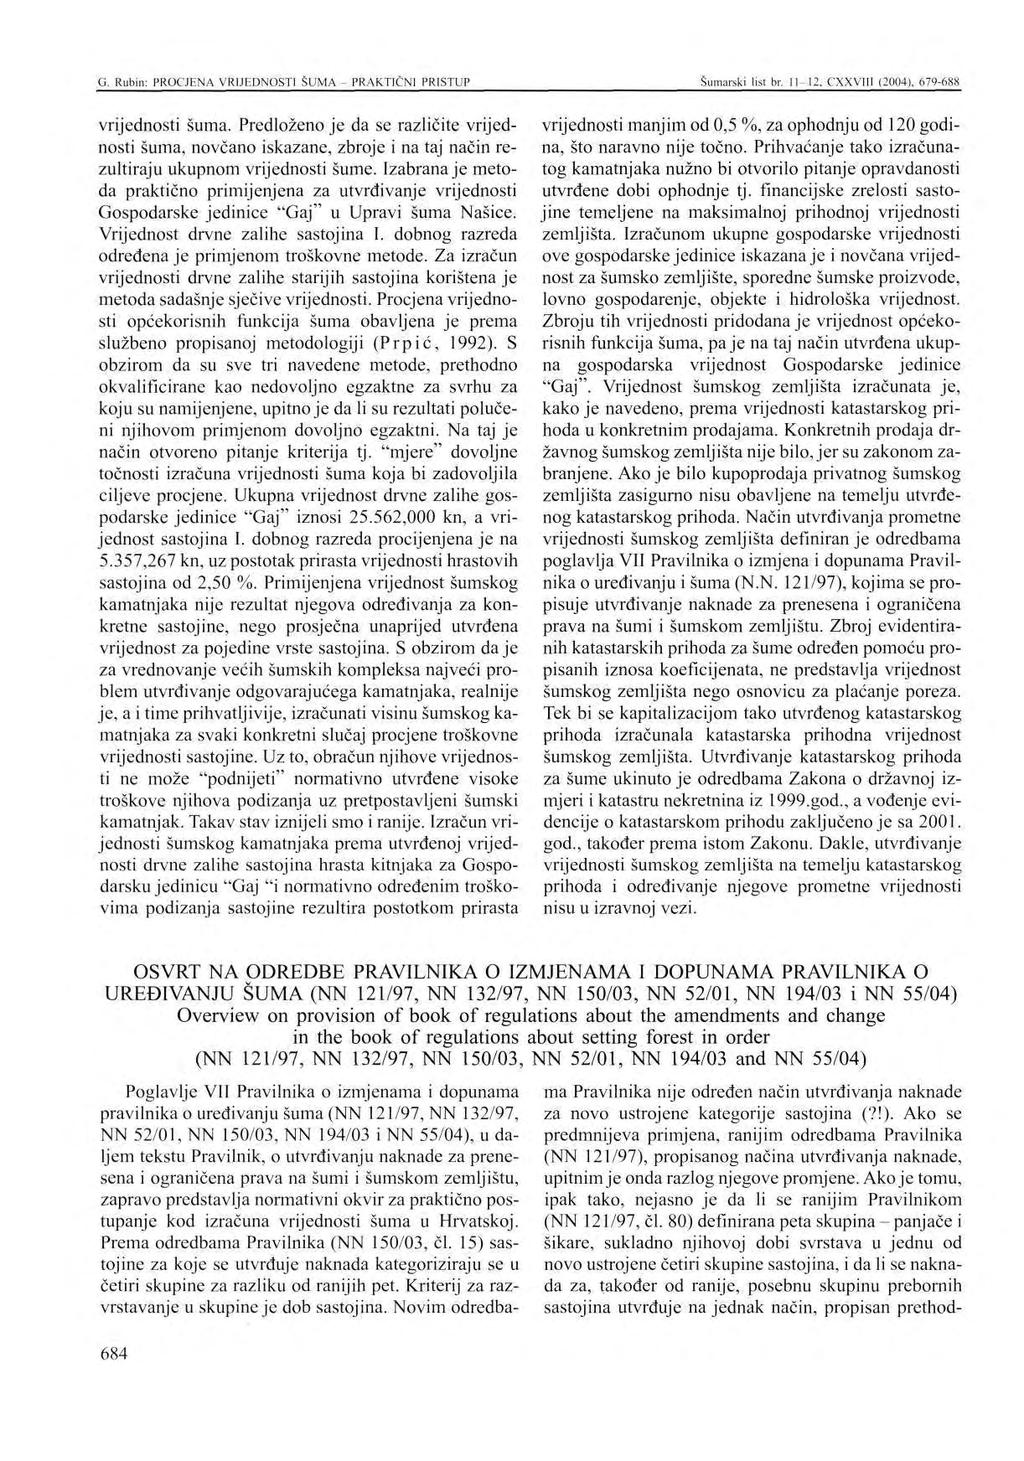 G. Rubin: PROCJENA VRIJEDNOSTI SUMA - PRAKTIČNI PRISTUP Šumarski list br. 11-12, CXXVIII (2004), 679-688 vrijednosti šuma.